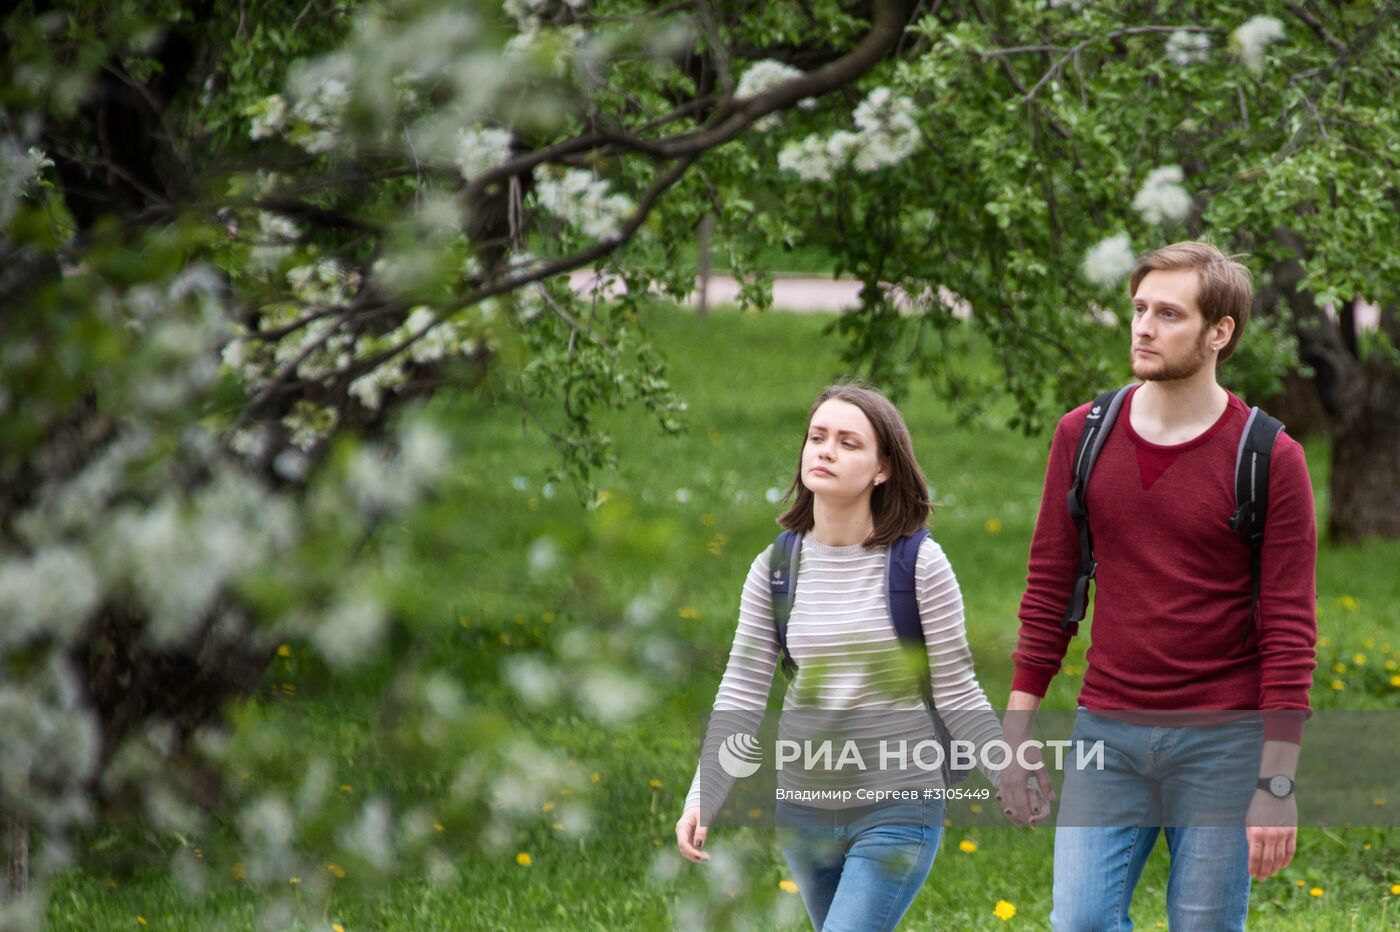 В Москве началось цветение яблонь